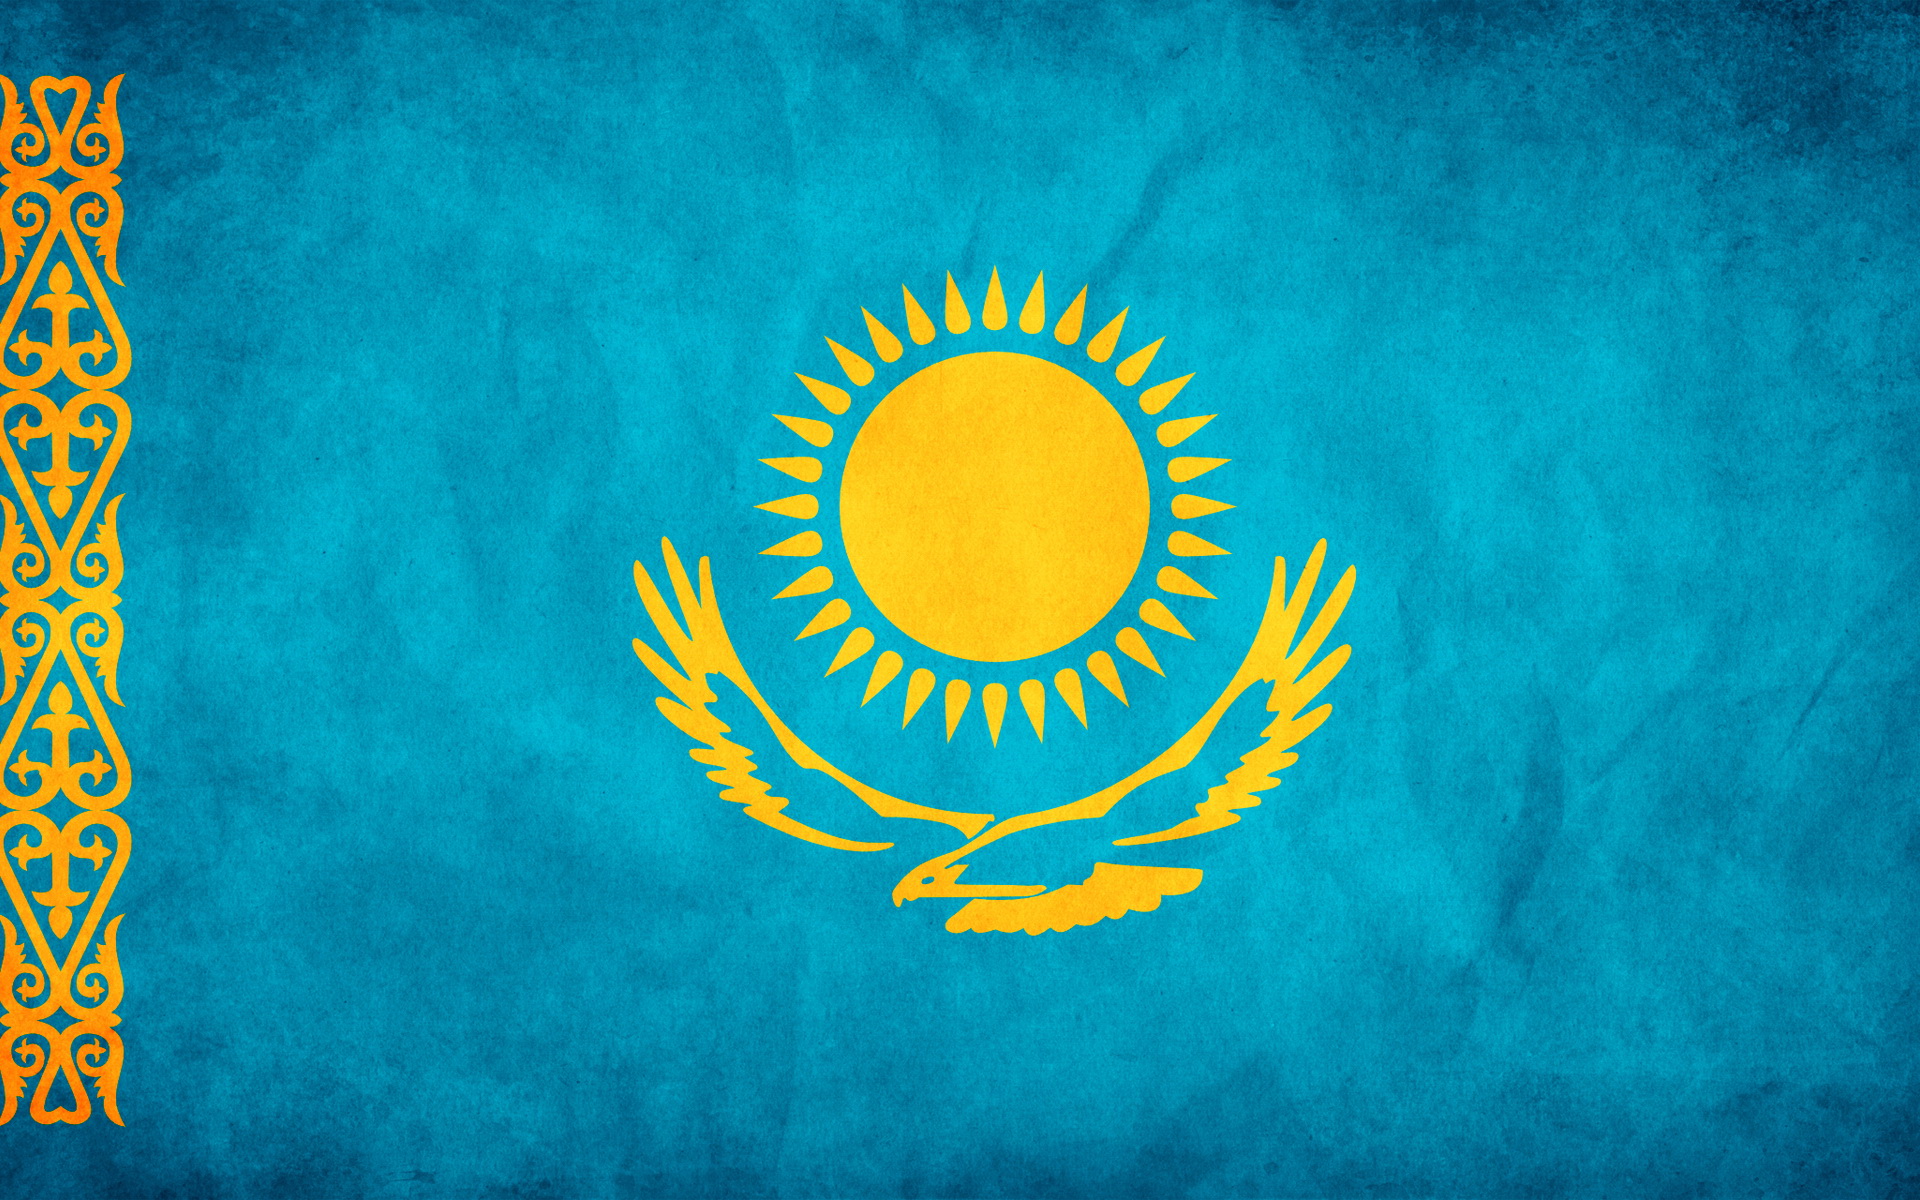 Скачать обои Флаг Казахстана на телефон бесплатно